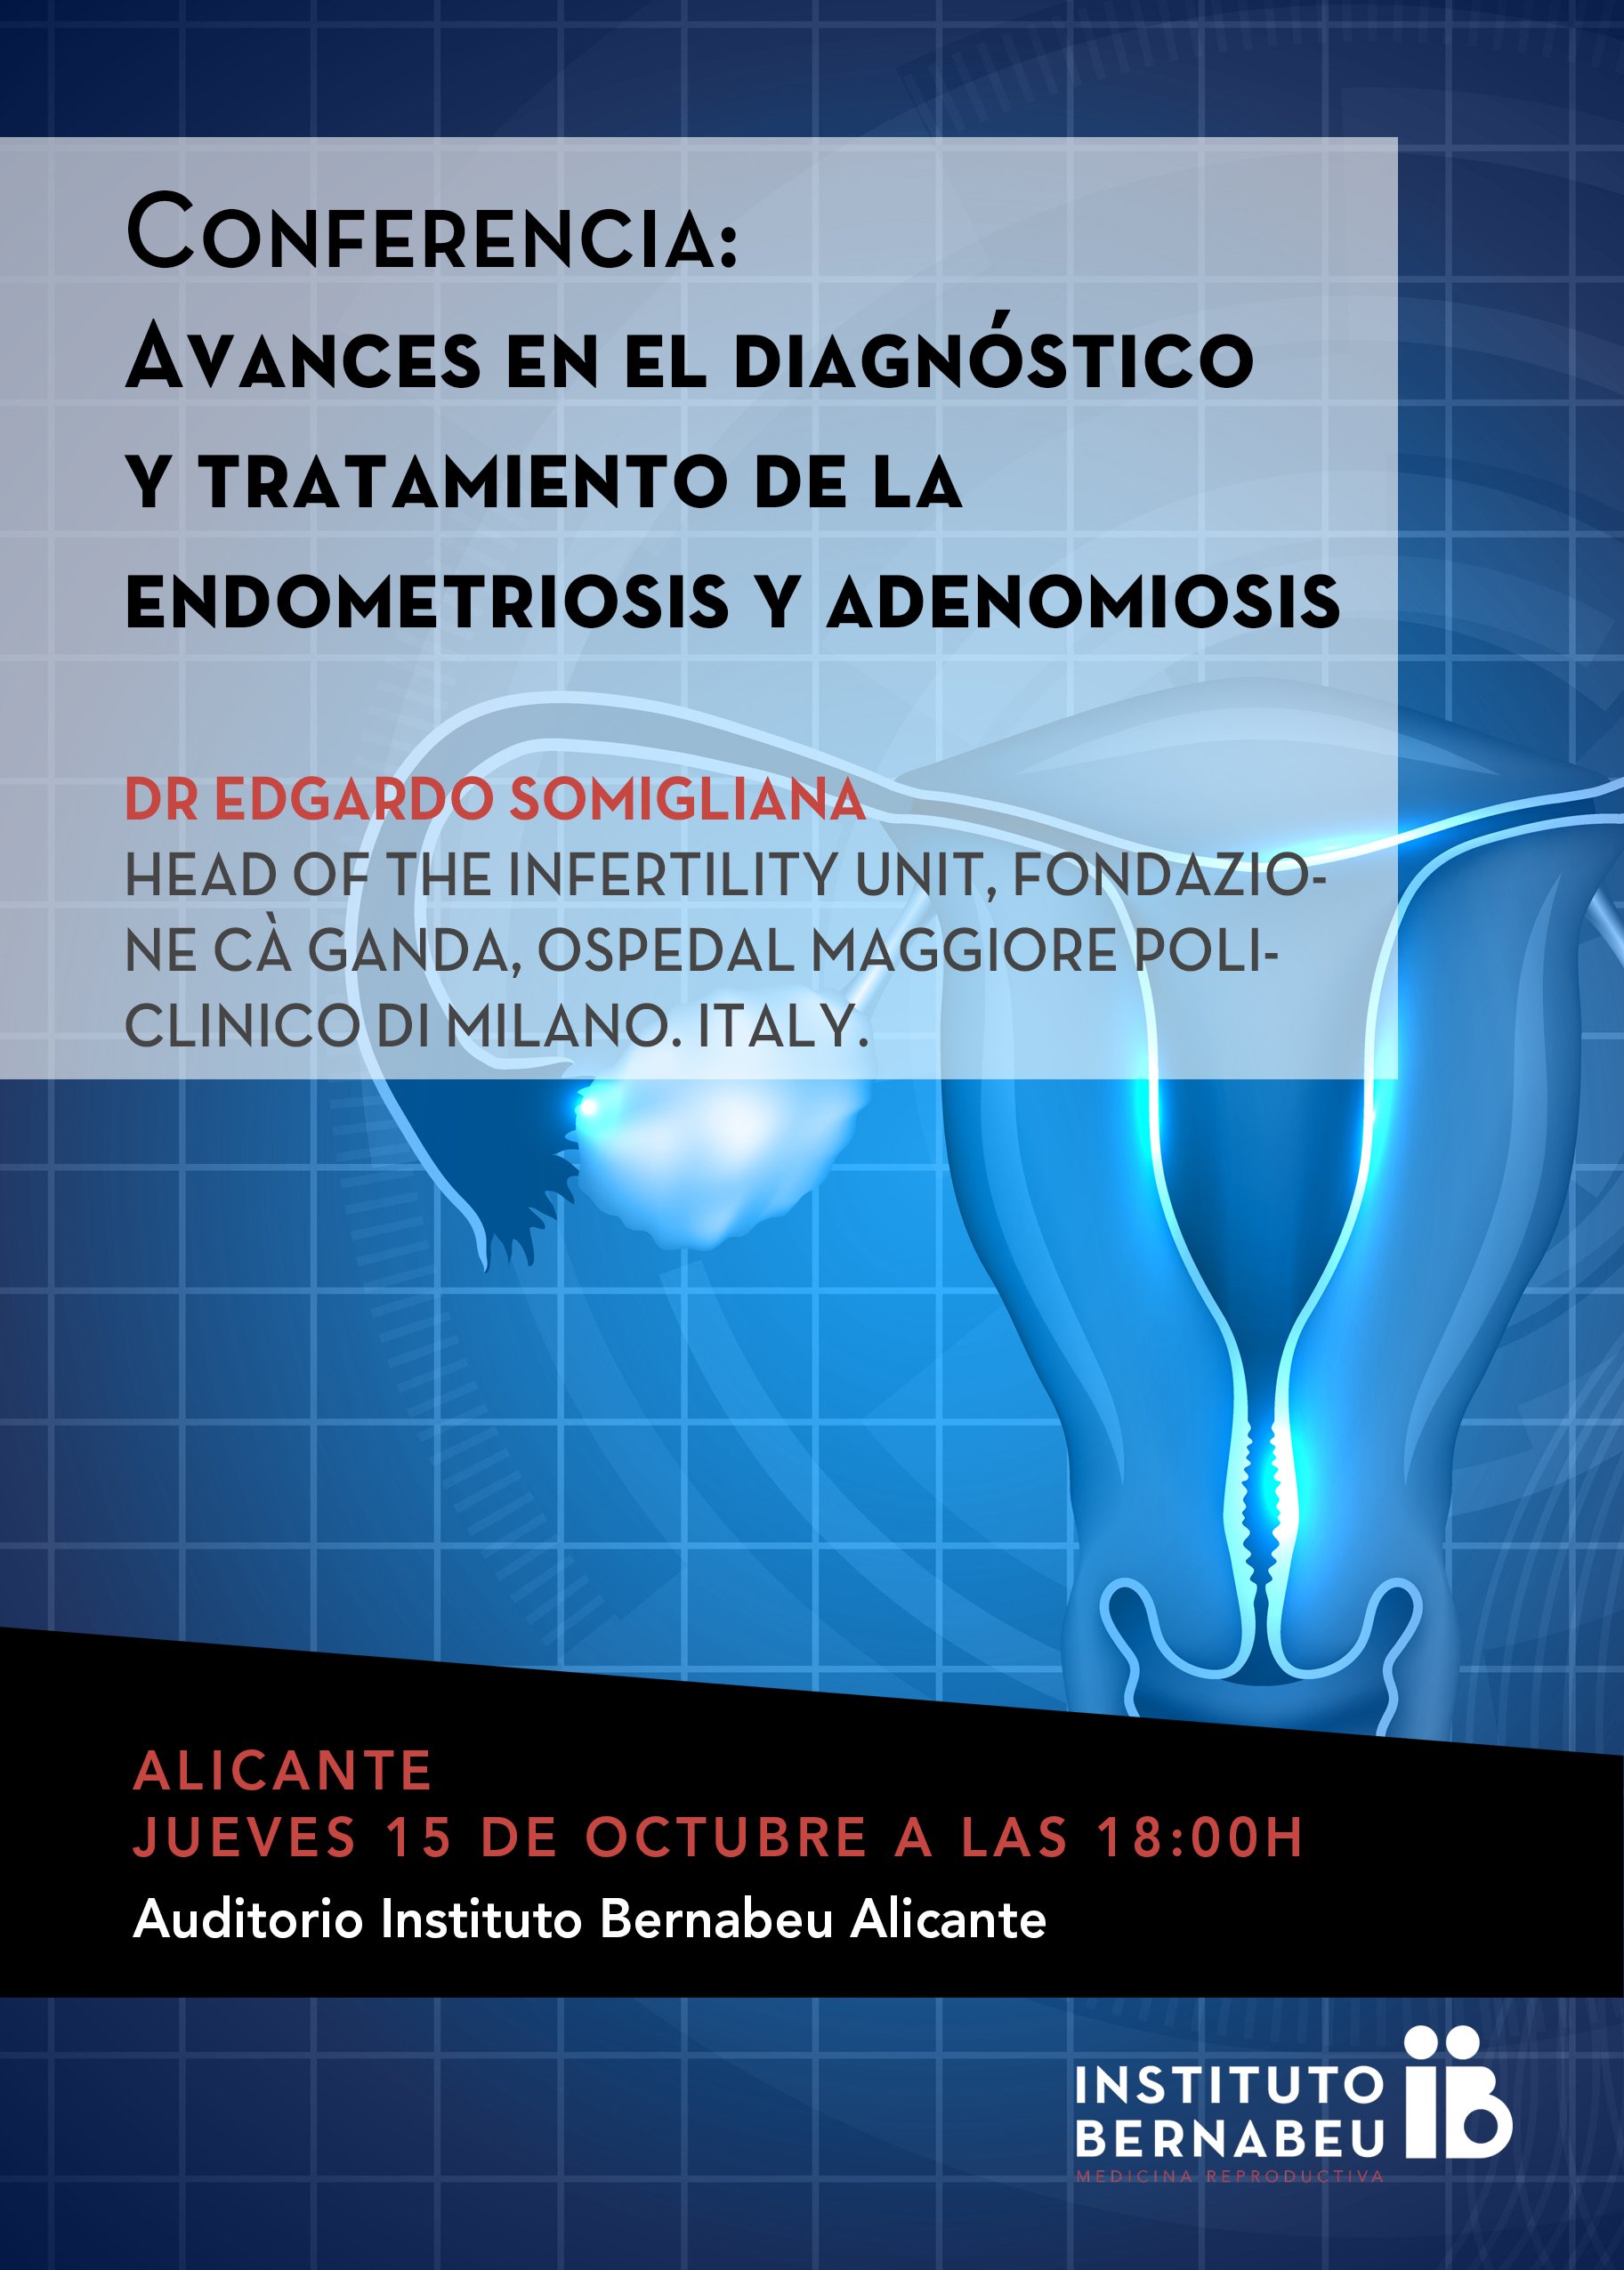 Conferencia “Avances en el diagnóstico y tratamiento de la endometriosis y adenomiosis”